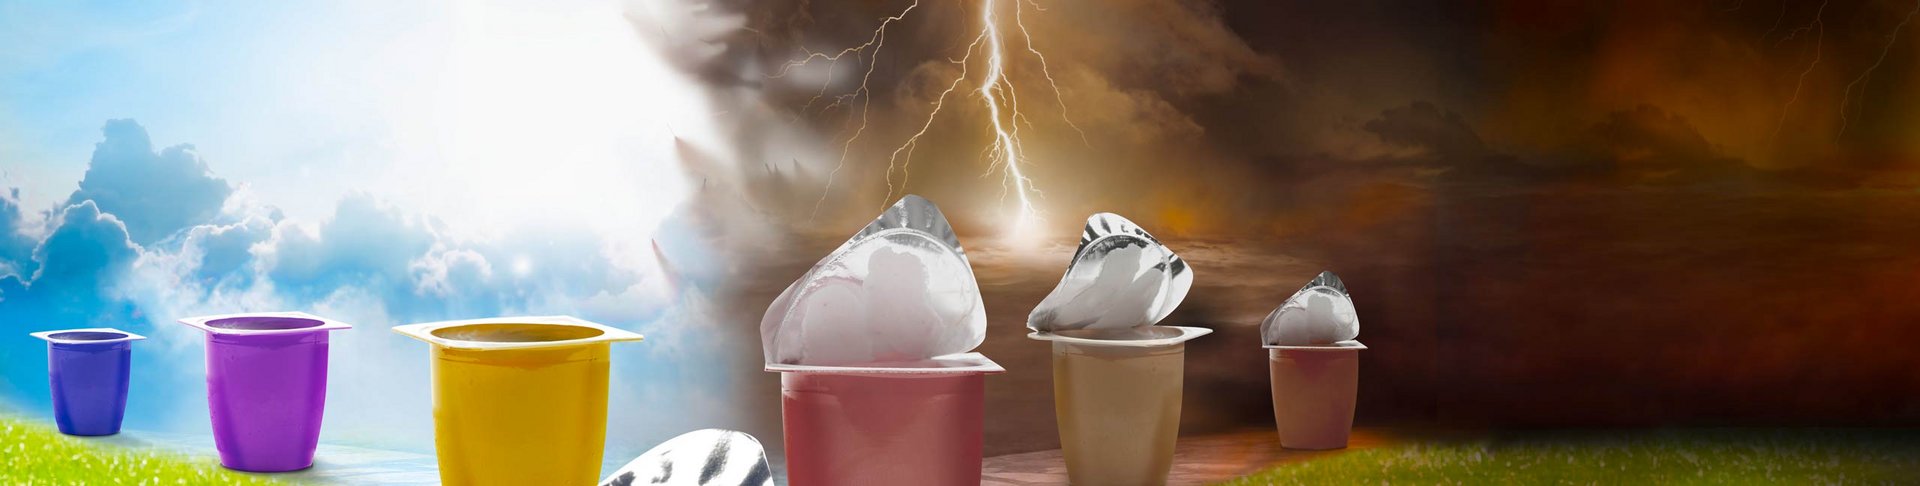 Joghurtbecher ohne Deckel sind in der Sonne und mit Deckel im Gewitter mit Blitzen. 